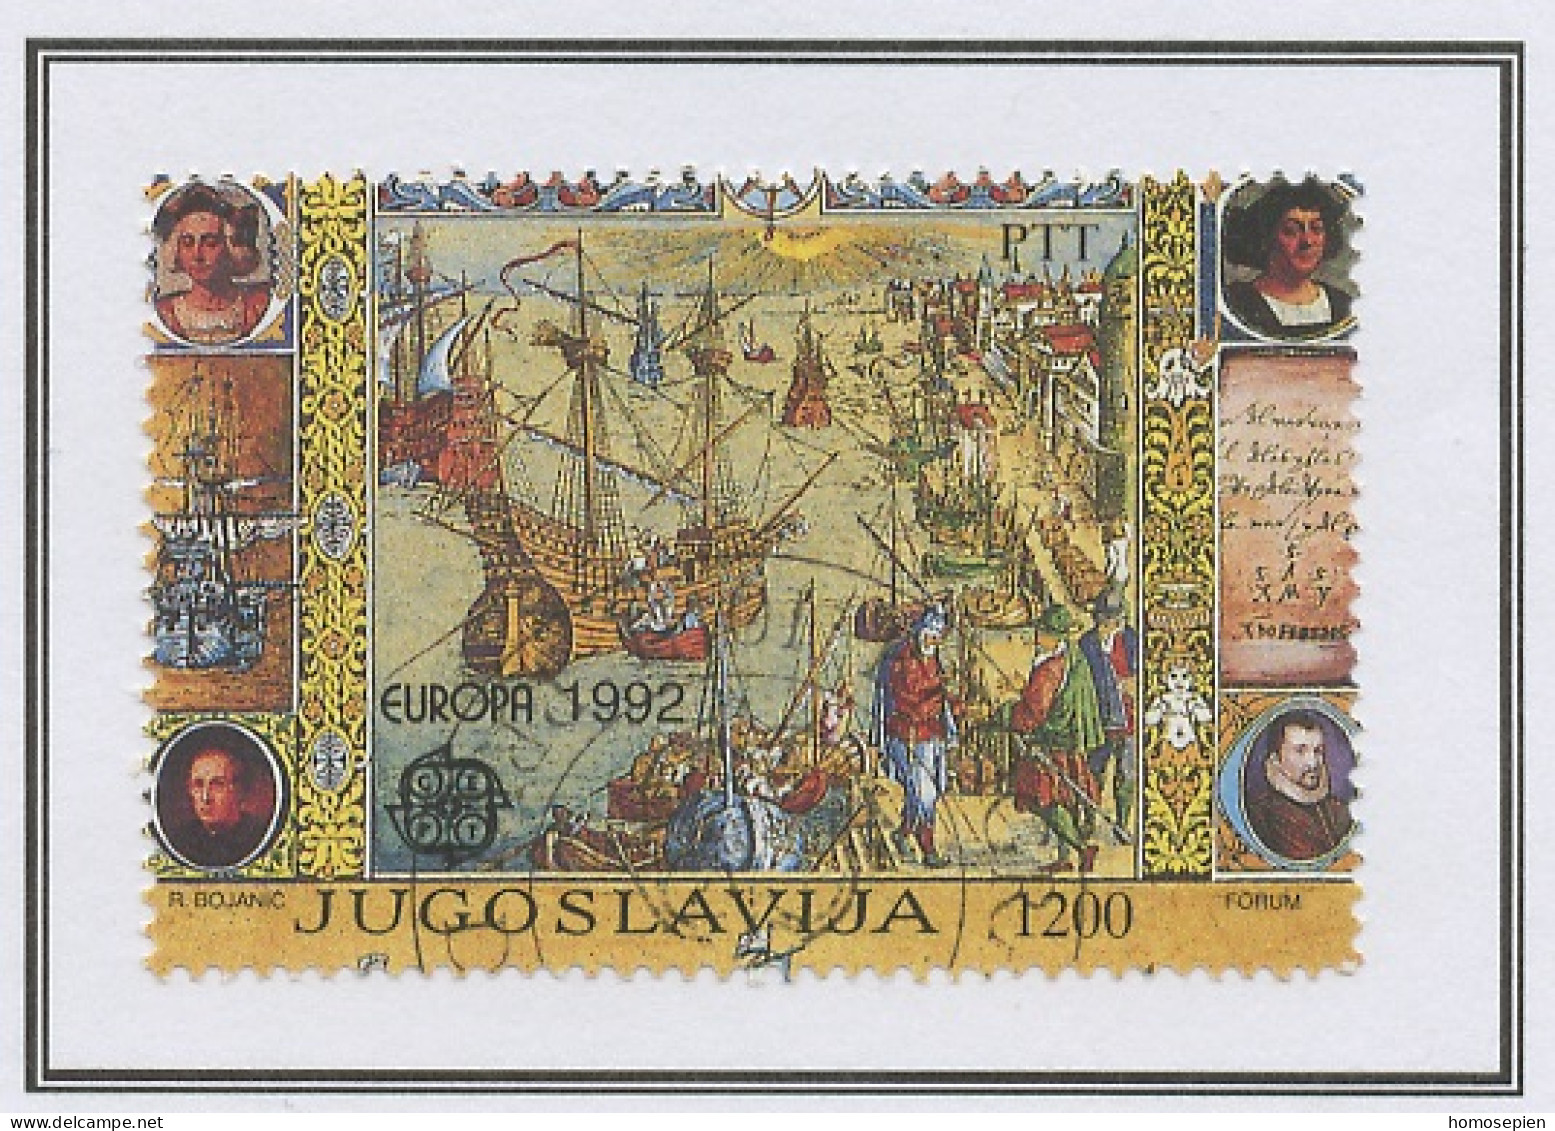 Yougoslavie - Jugoslawien - Yugoslavia 1992 Y&T N°2399 - Michel N°2536 (o) - 1200d EUROPA - Used Stamps